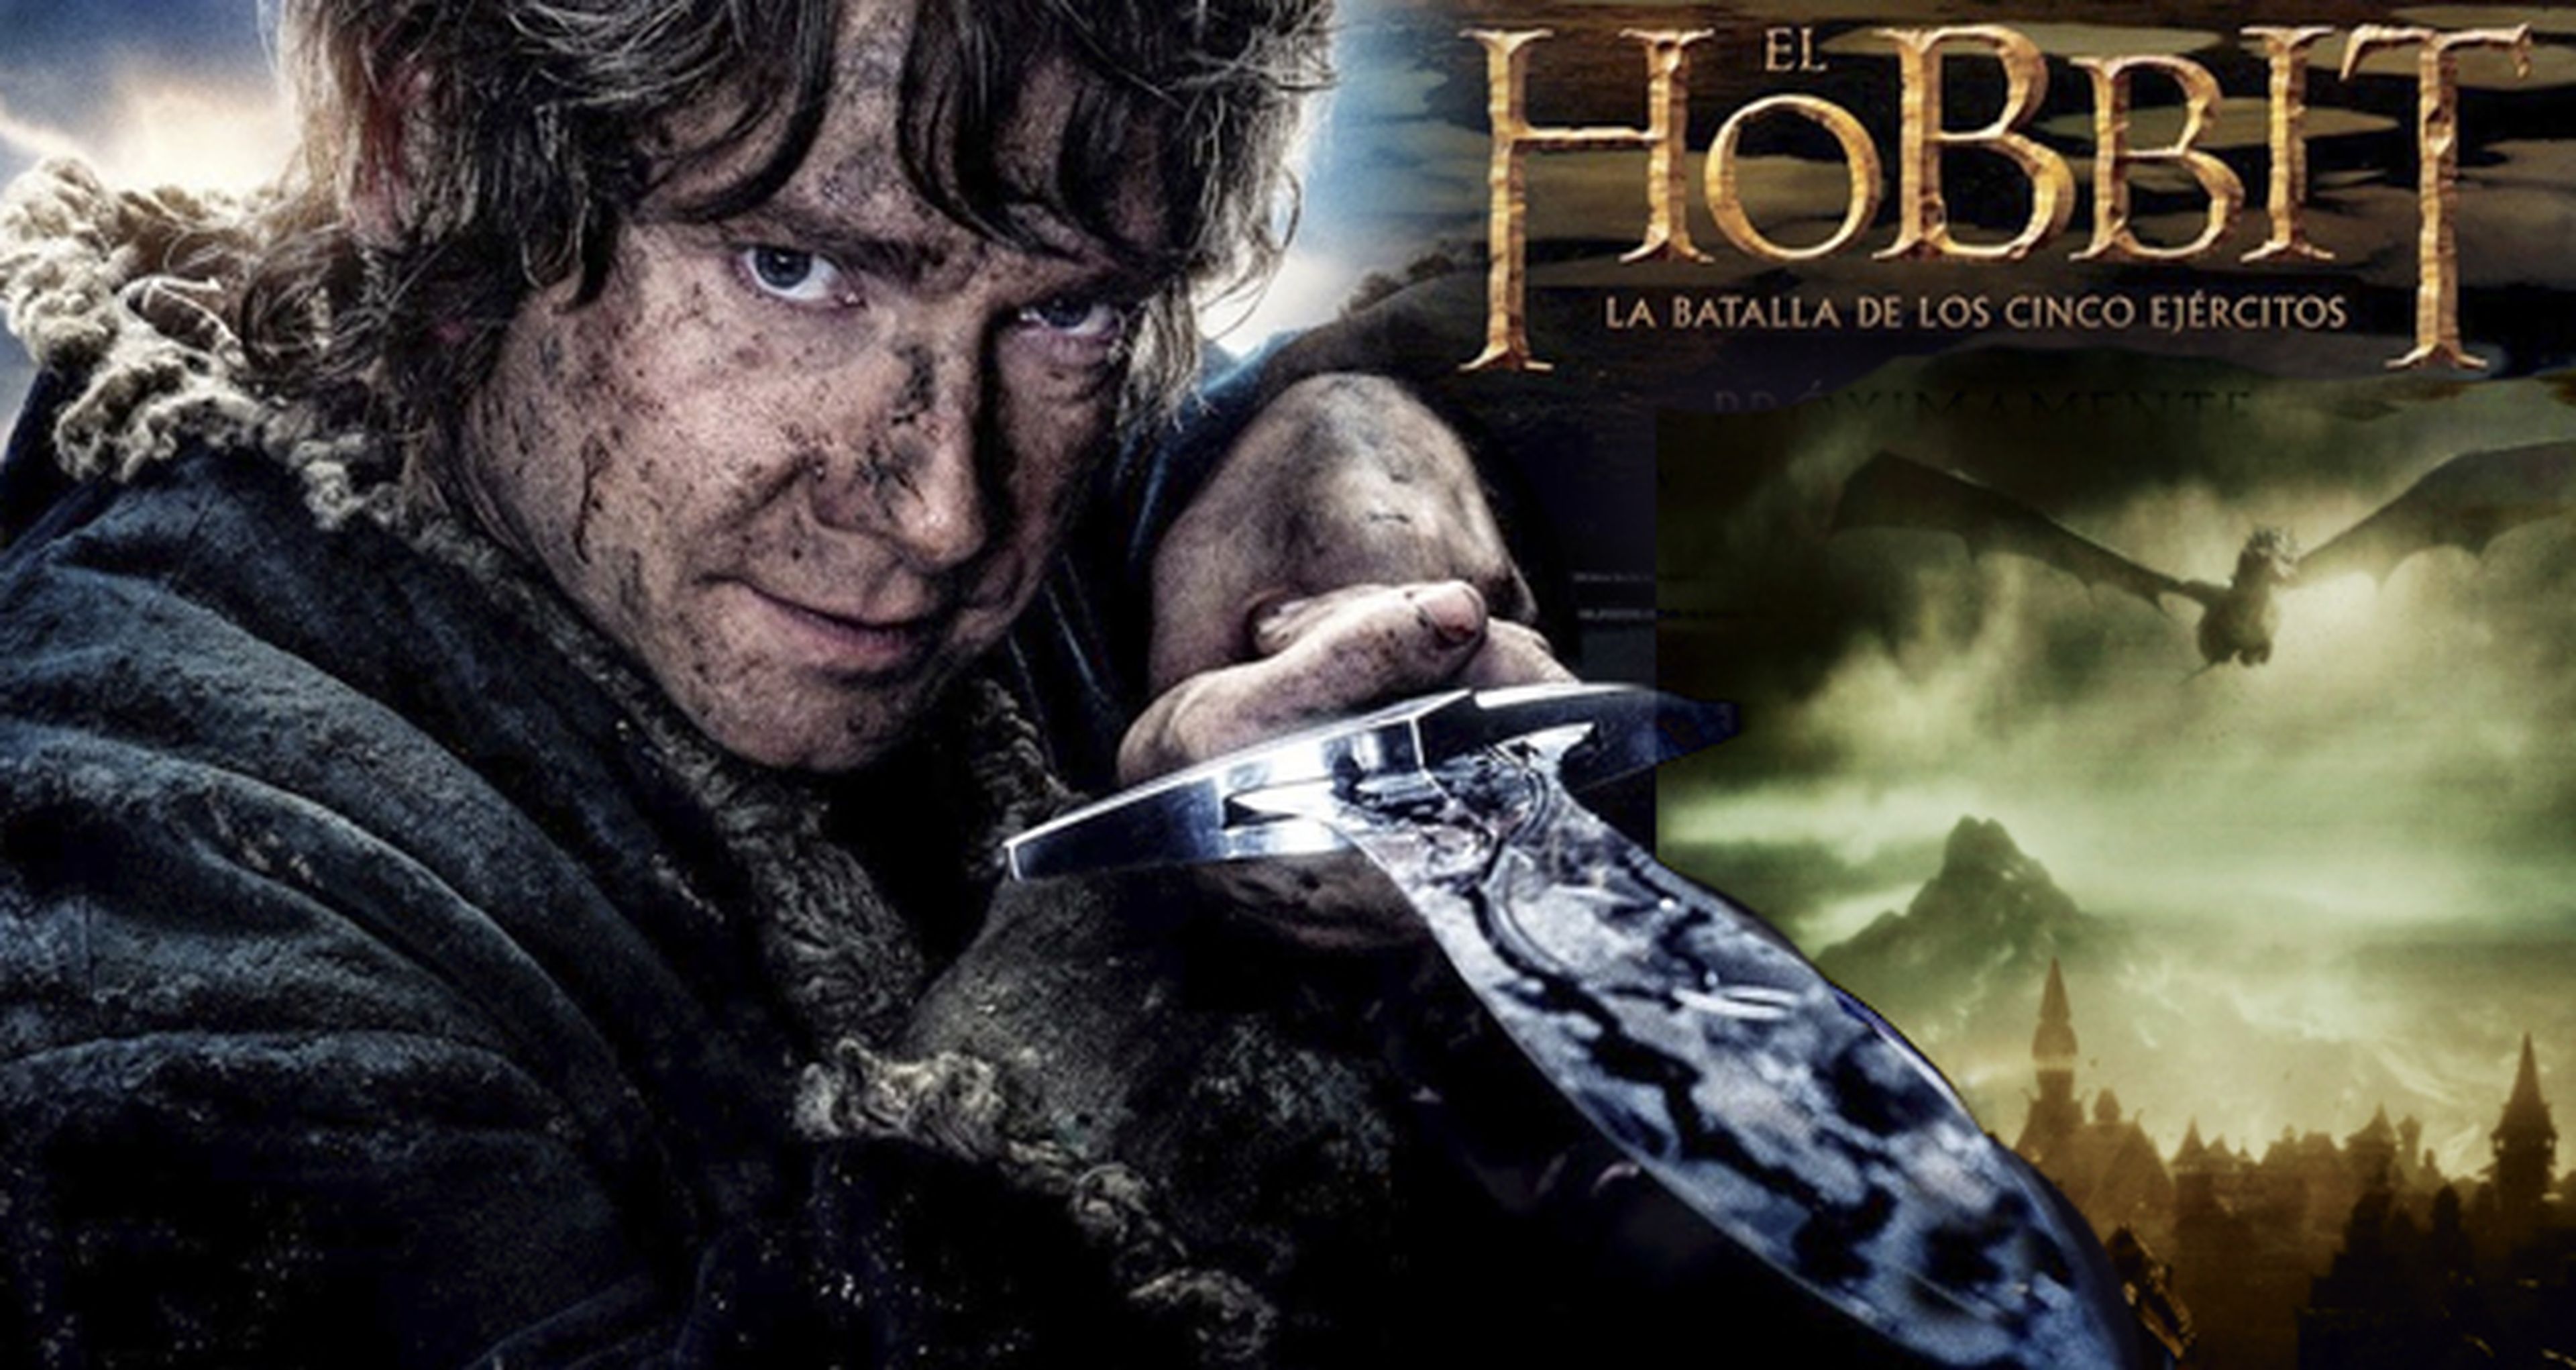 El hobbit: La batalla de los cinco ejércitos - Película 2014